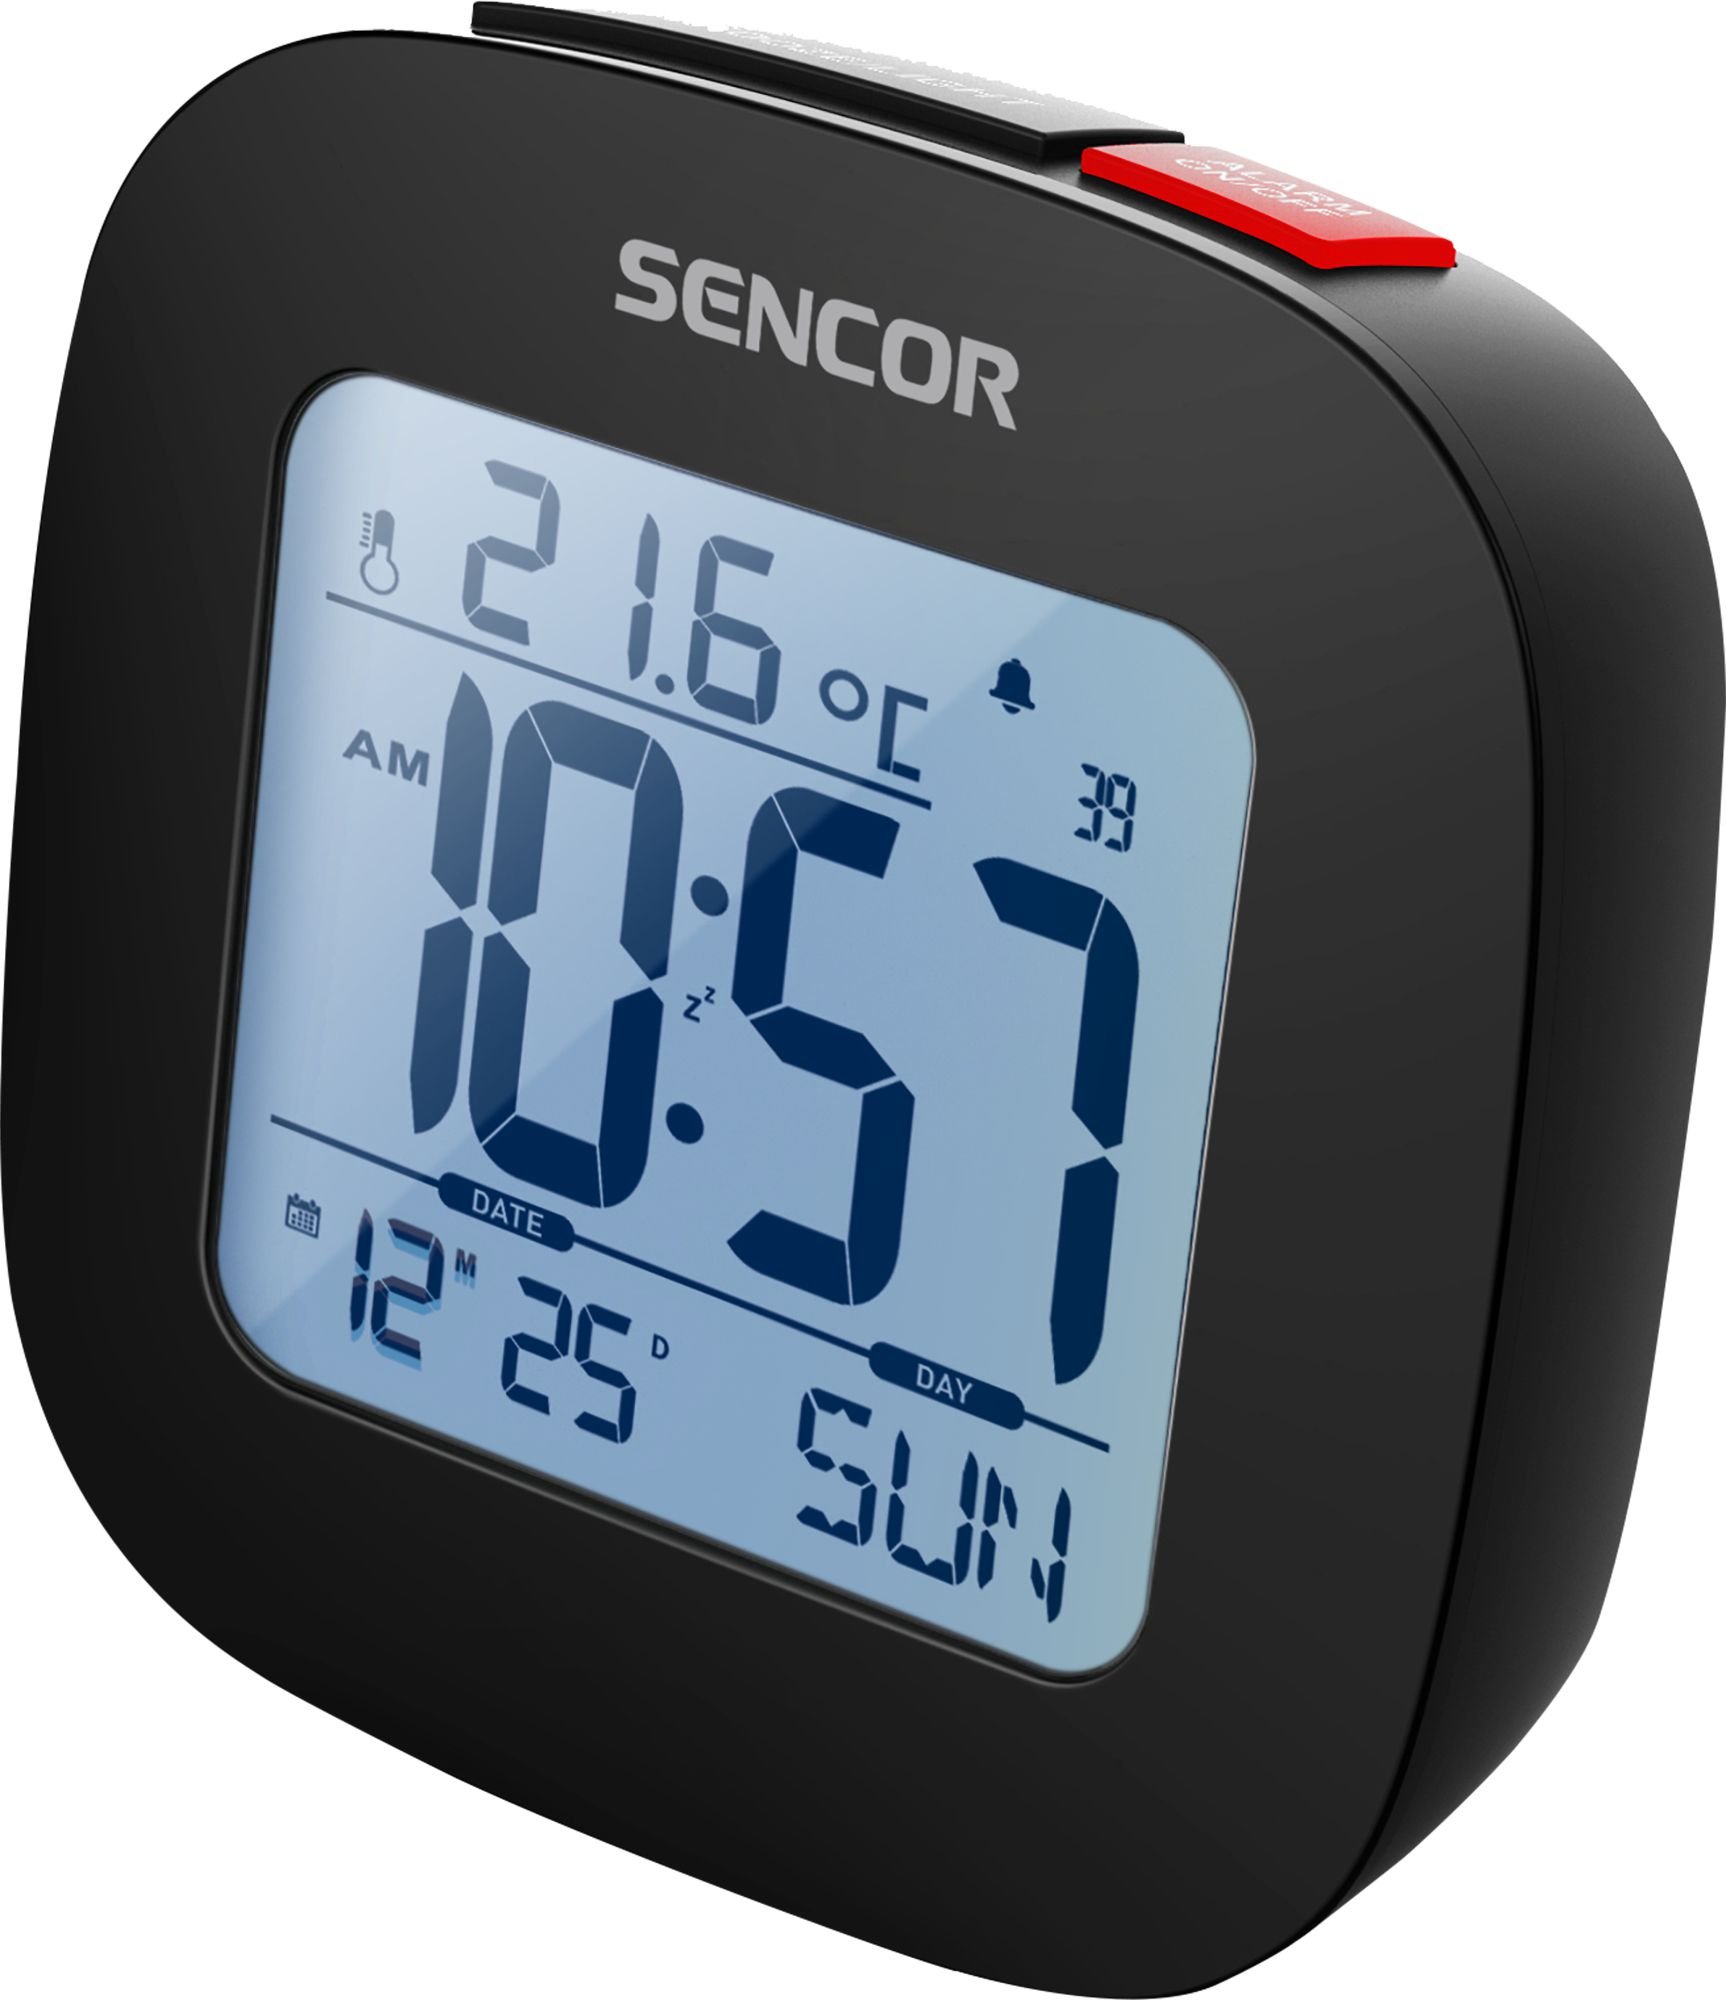 Ceasuri decorative - Ceas cu alarma Sencor Sdc 1200 B, Termometru, Calendar, Radio, Functie Snooze, Negru